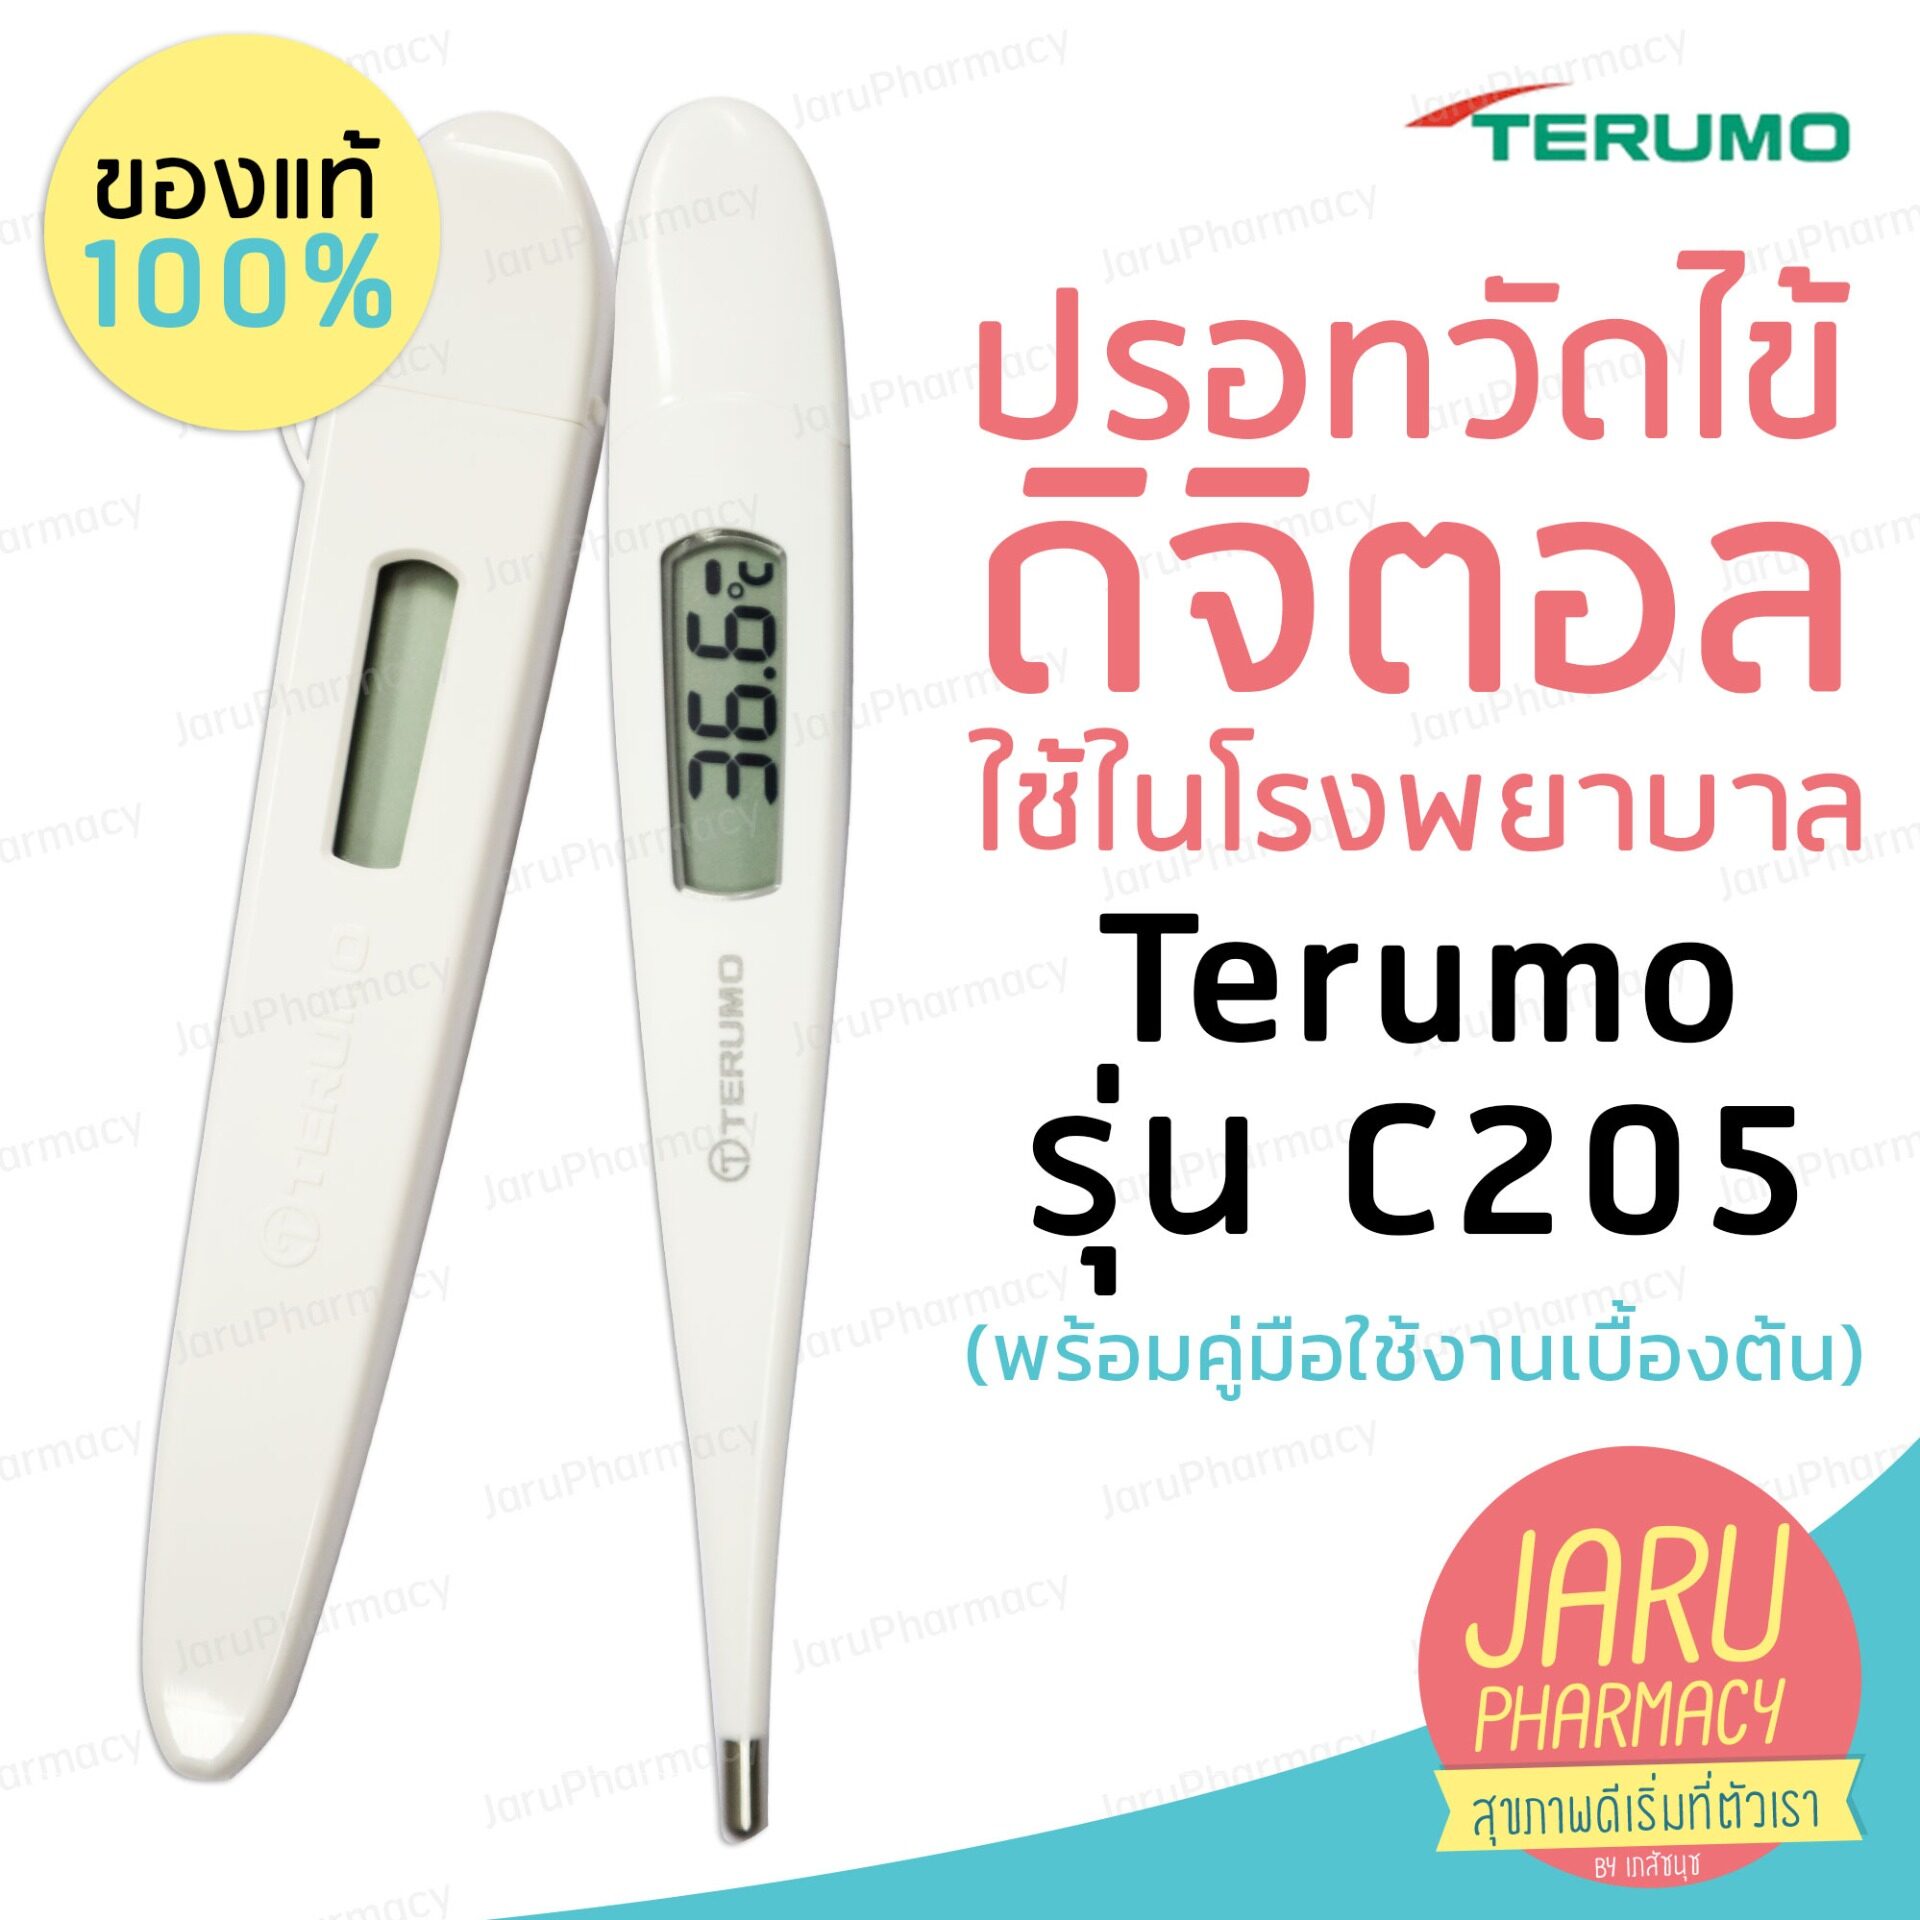 ปรอทวัดไข้ดิจิตอล Terumo รุ่น C205  (พร้อมคู่มือใช้งานเบื้องต้น)